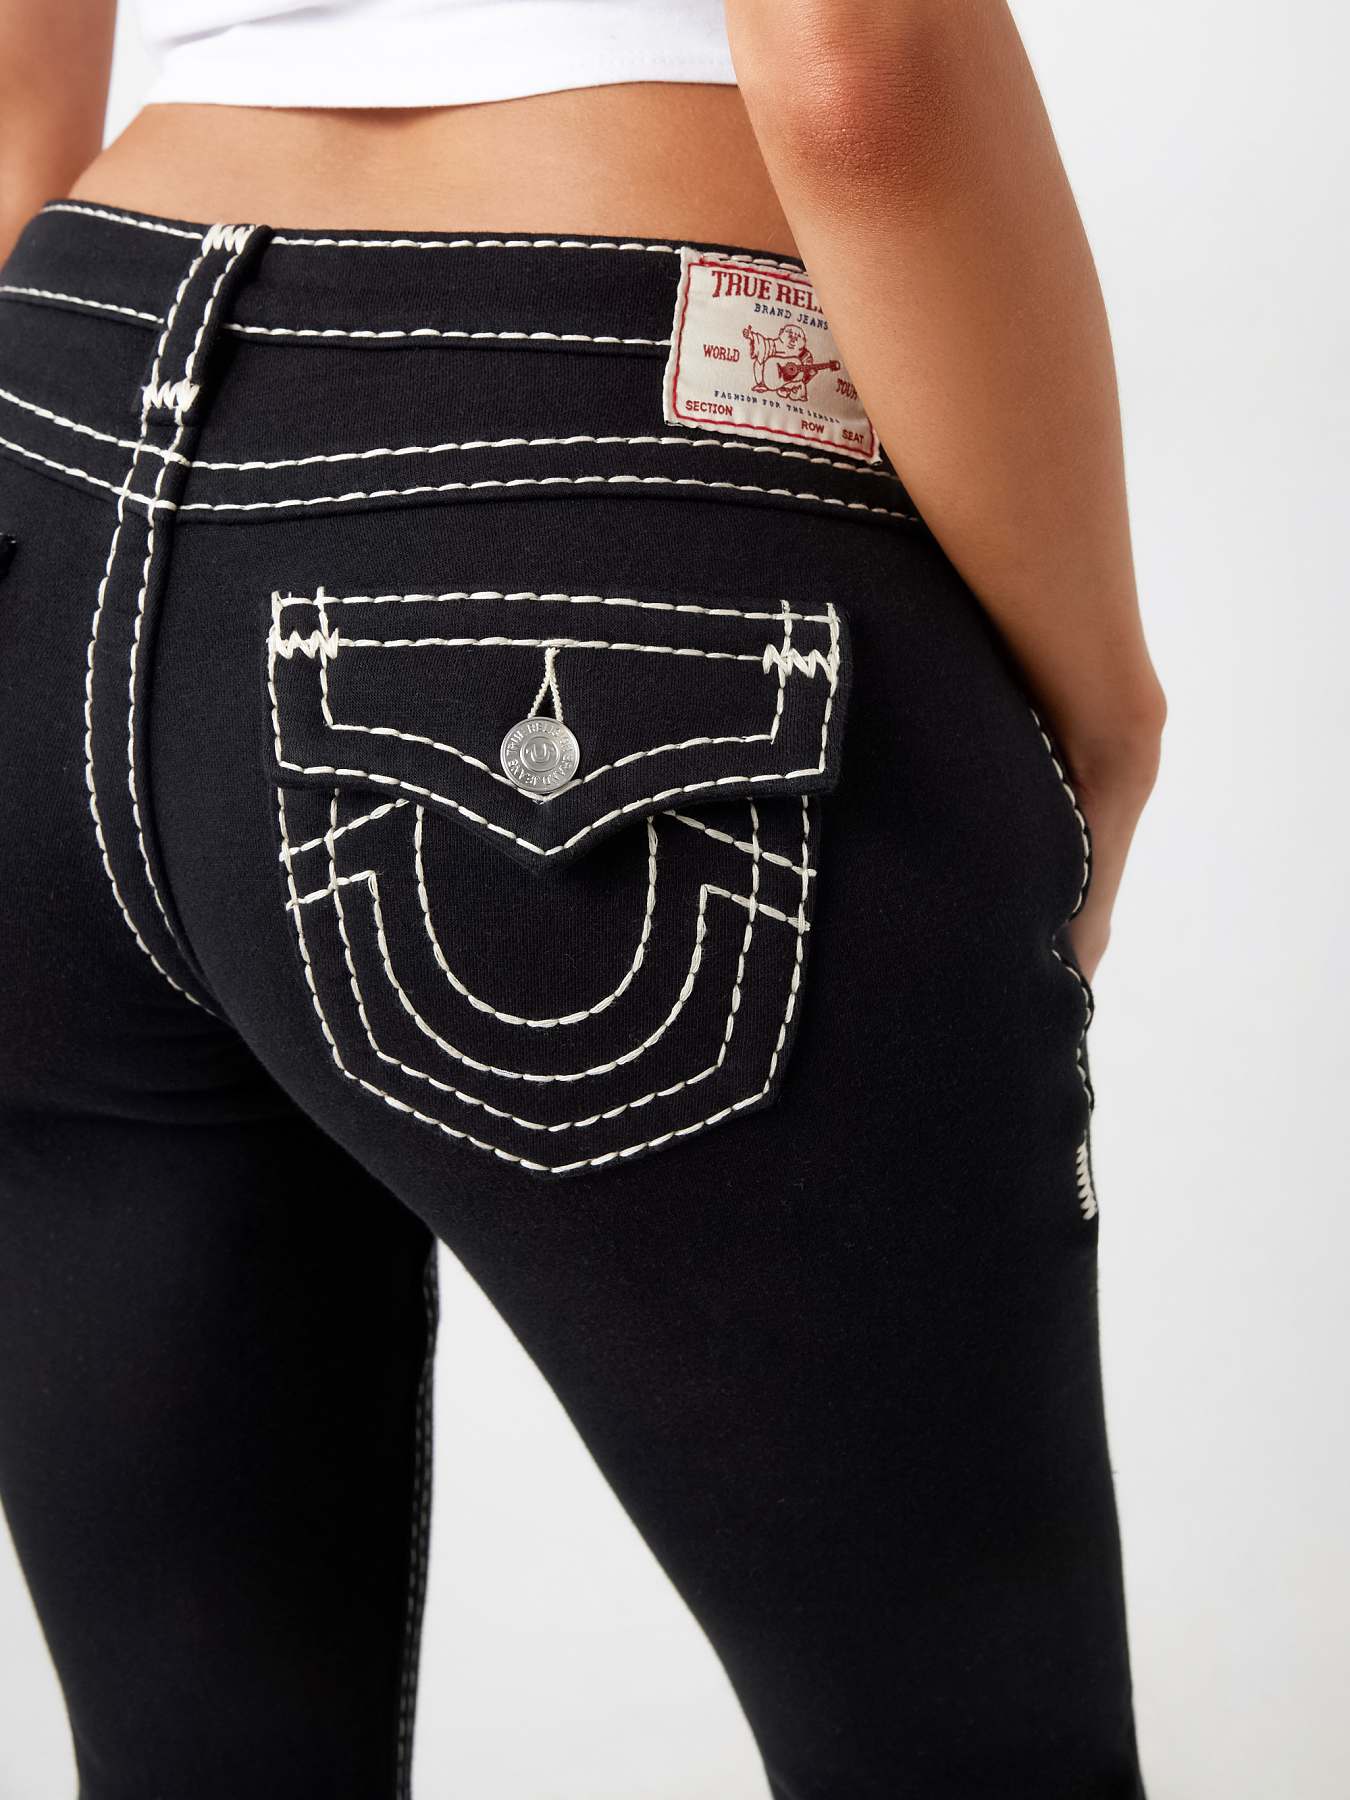 True religion jeans, Women's Fashion, Bottoms, Jeans & Leggings on